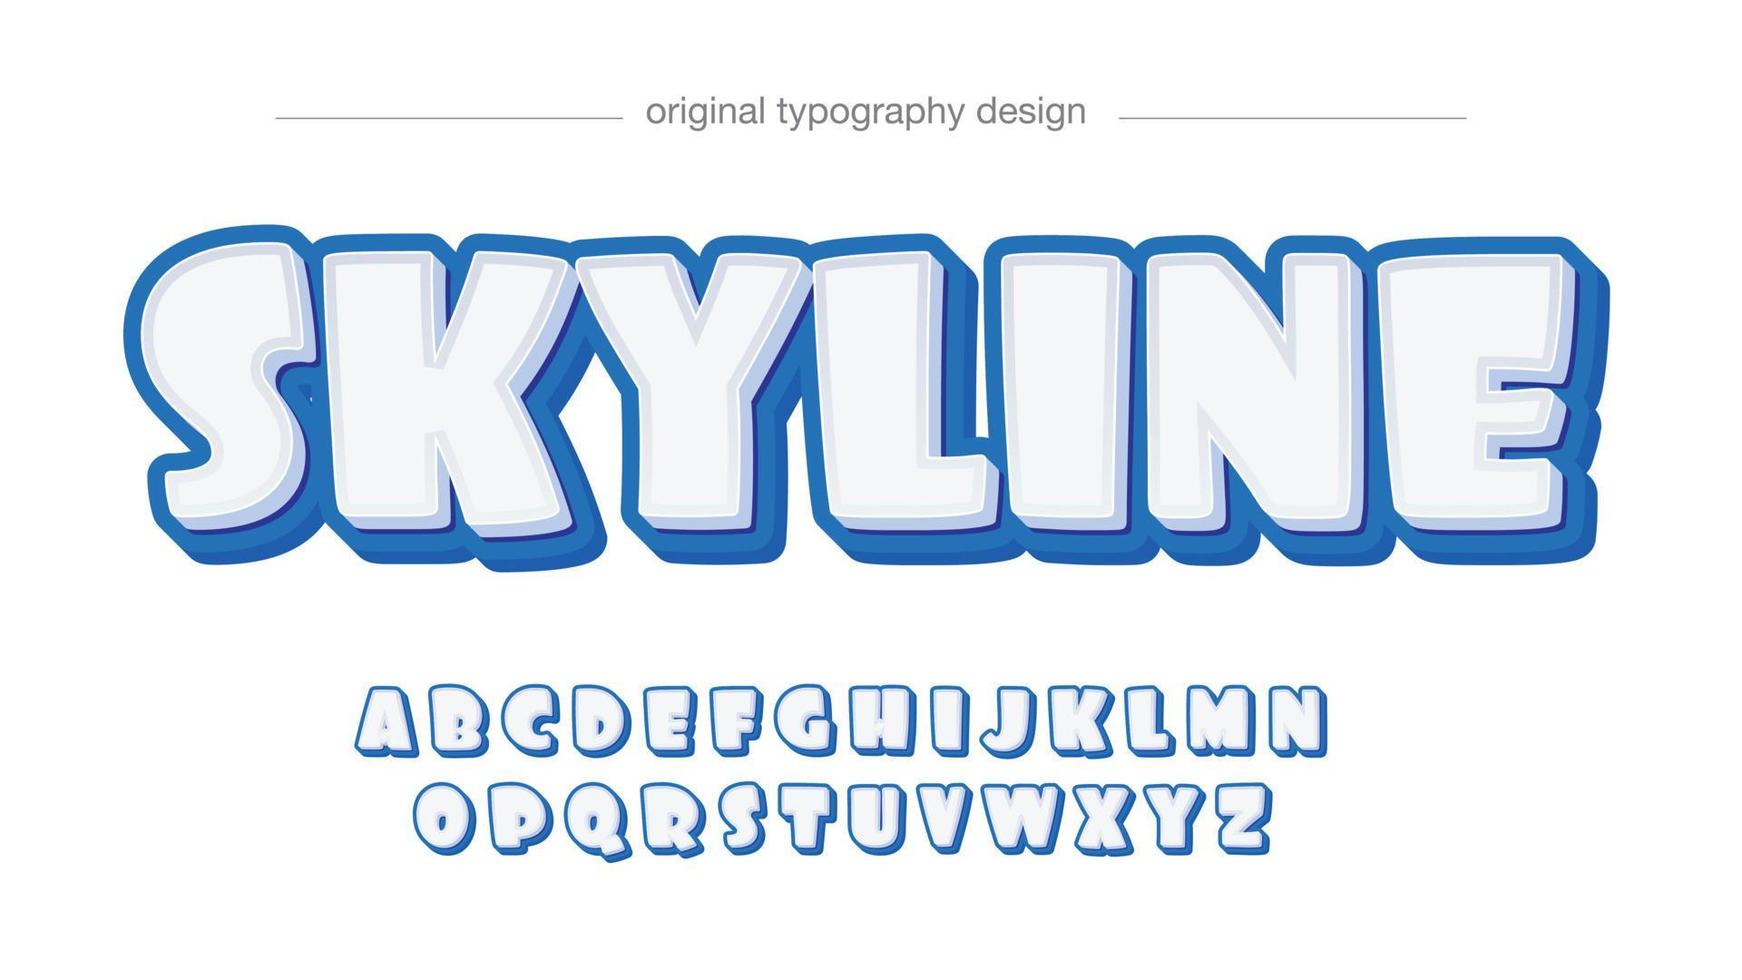 blaue und weiße abgerundete 3D-Cartoon-Typografie vektor